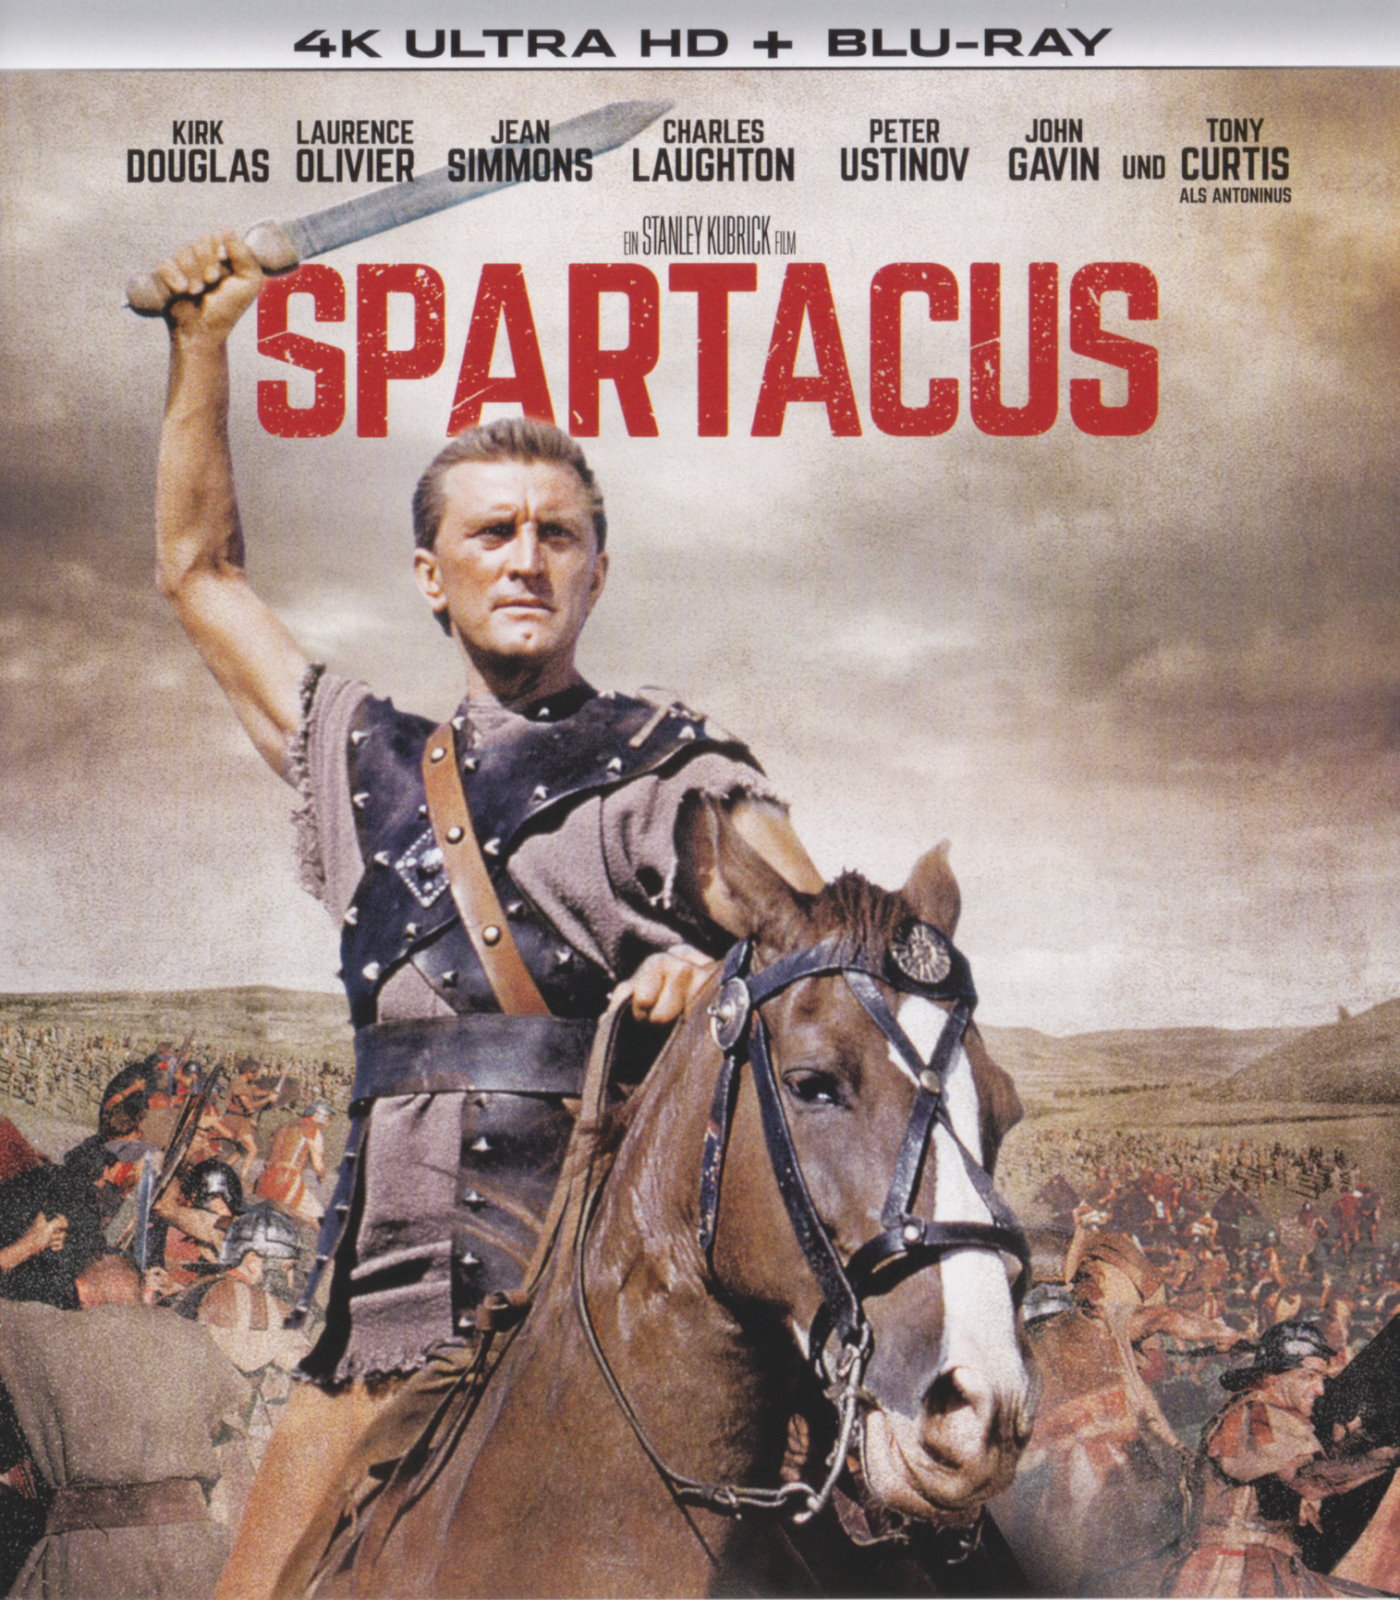 Cover - Spartacus.jpg